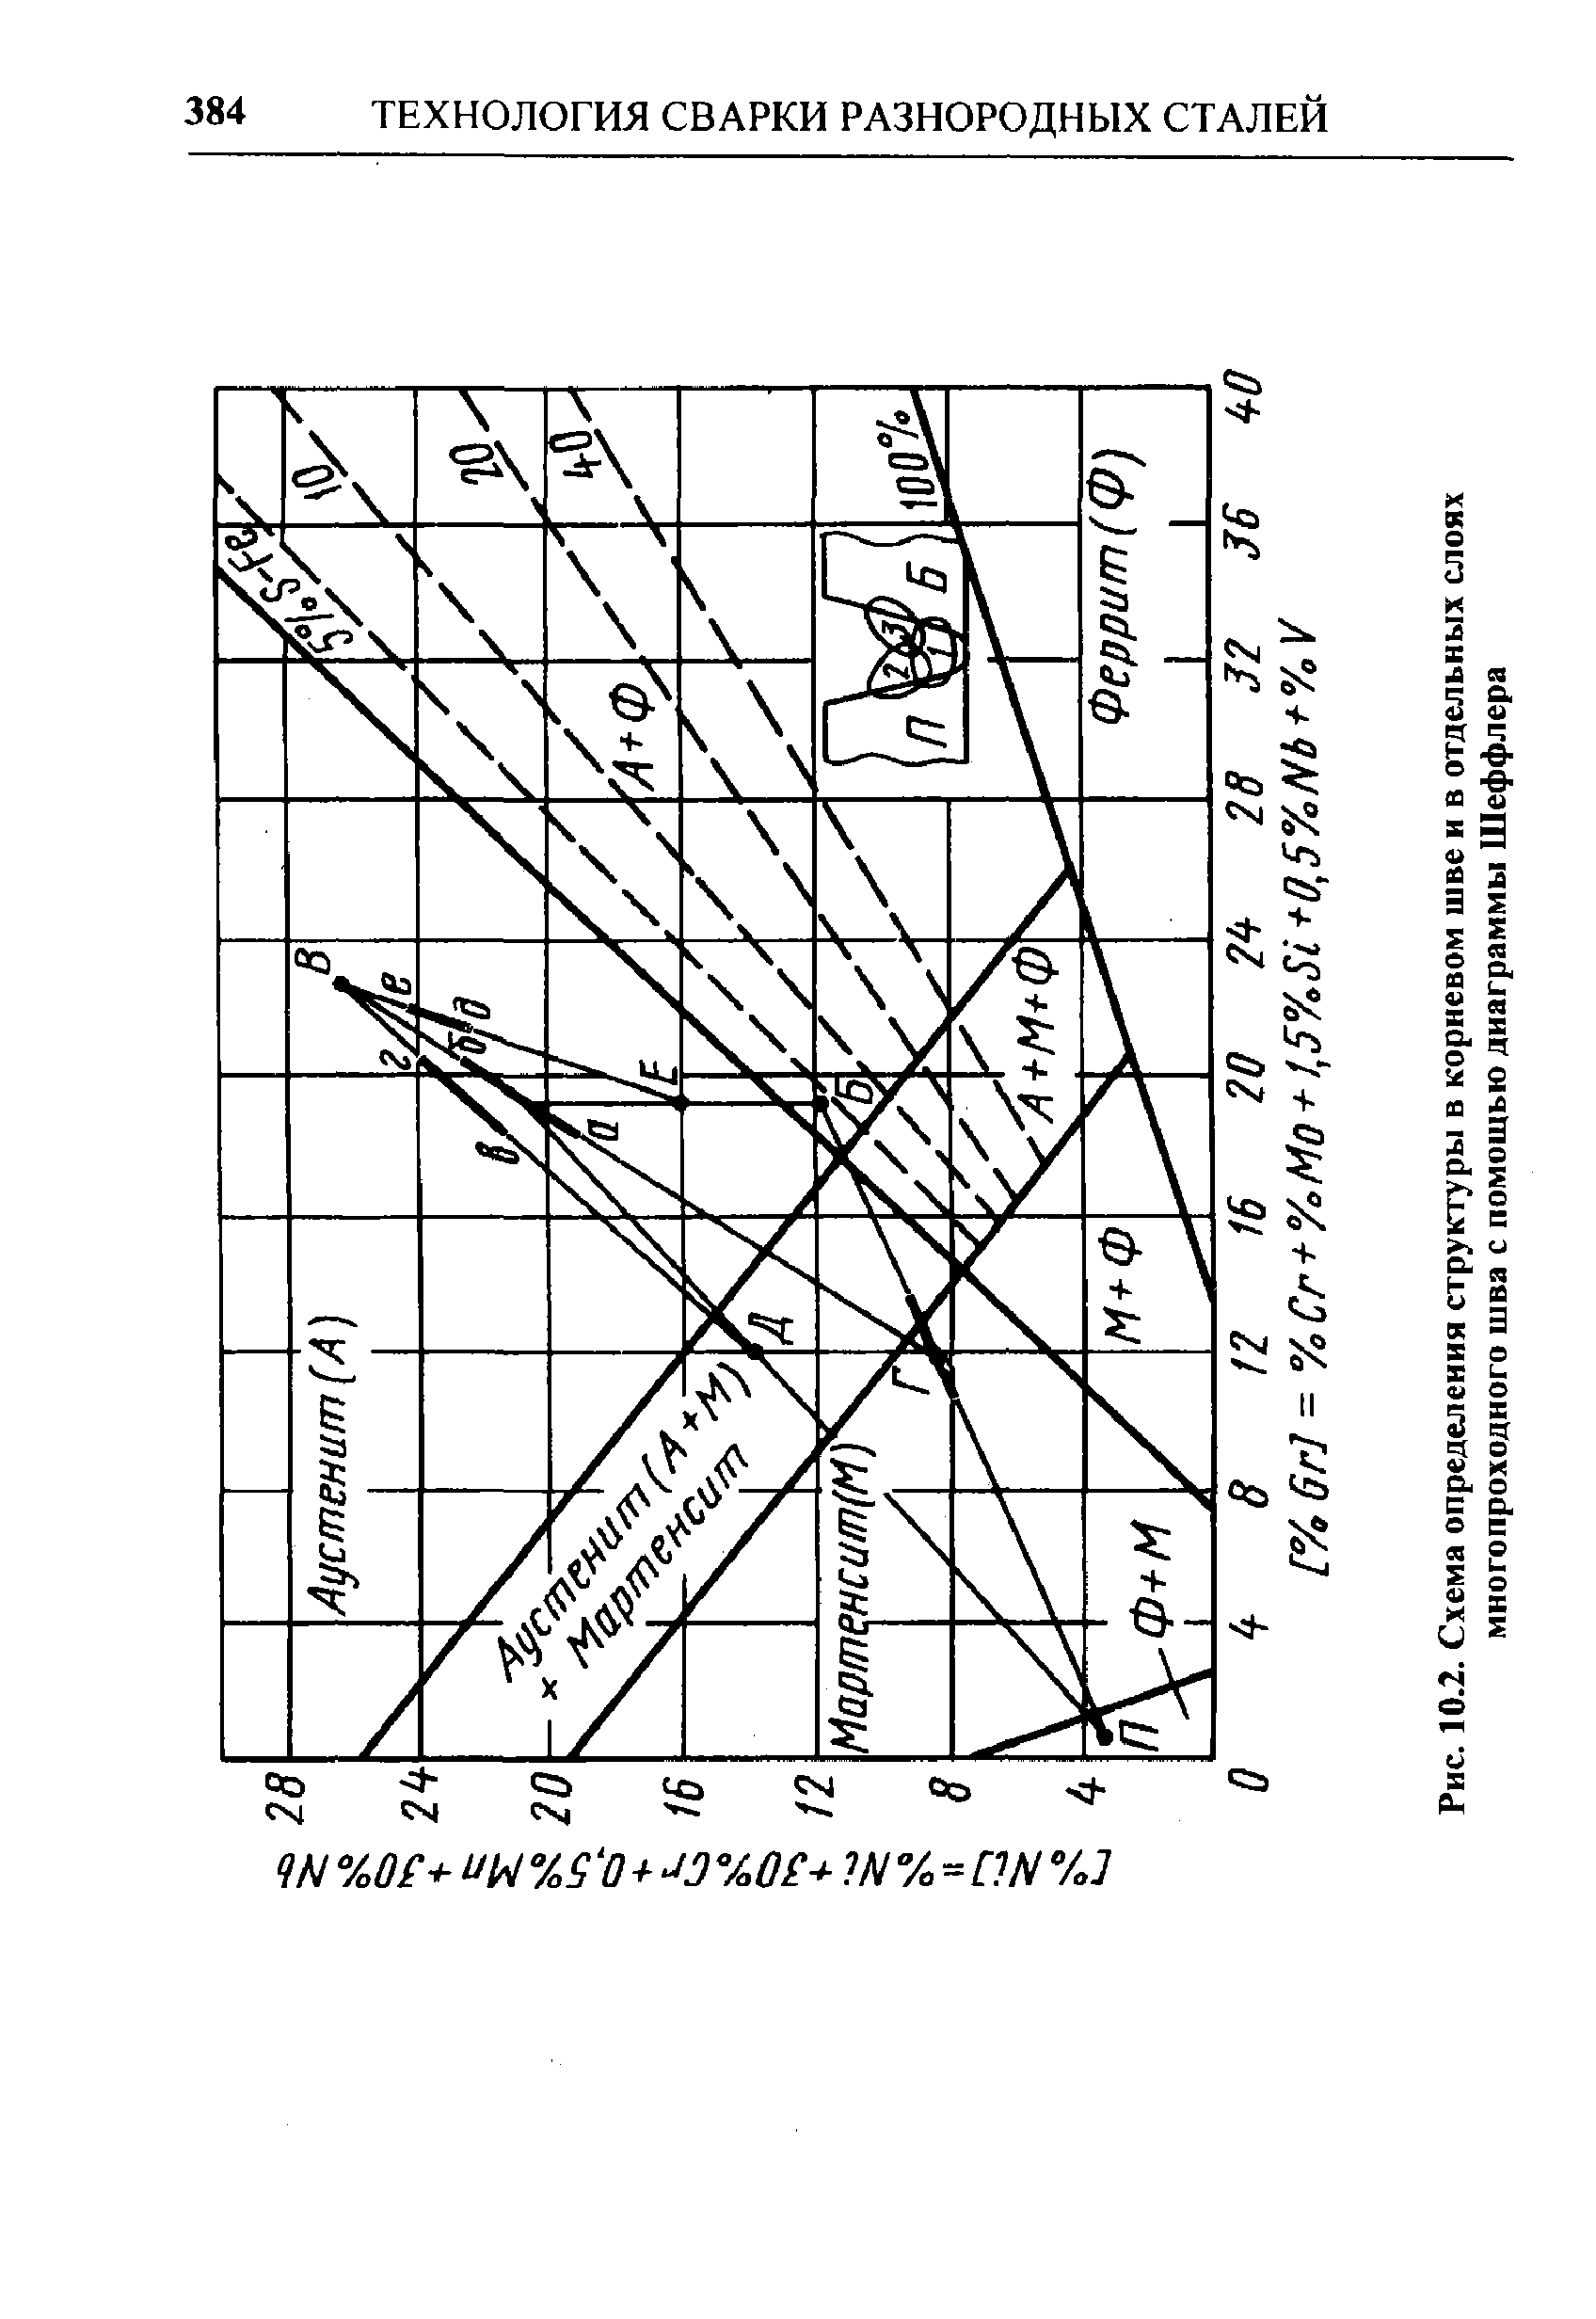 Рис. 10.2. Схема определения структуры в корневом шве н в отдельных слоях многопроходного шва с помощью диаграммы Шеффлера
